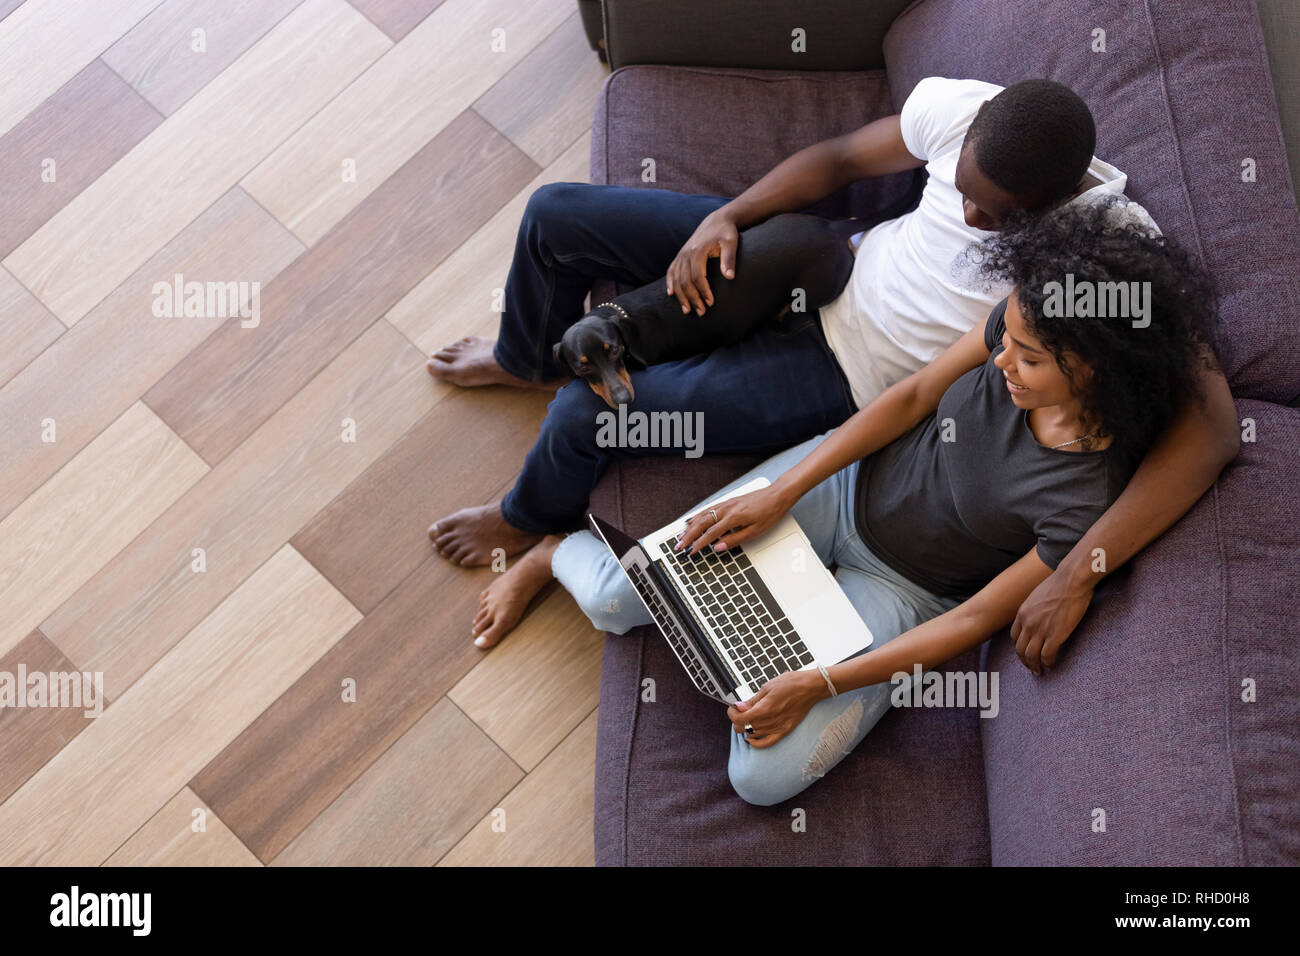 L'Afrique de l'heureux couple using computer sitting on sofa with pet Banque D'Images